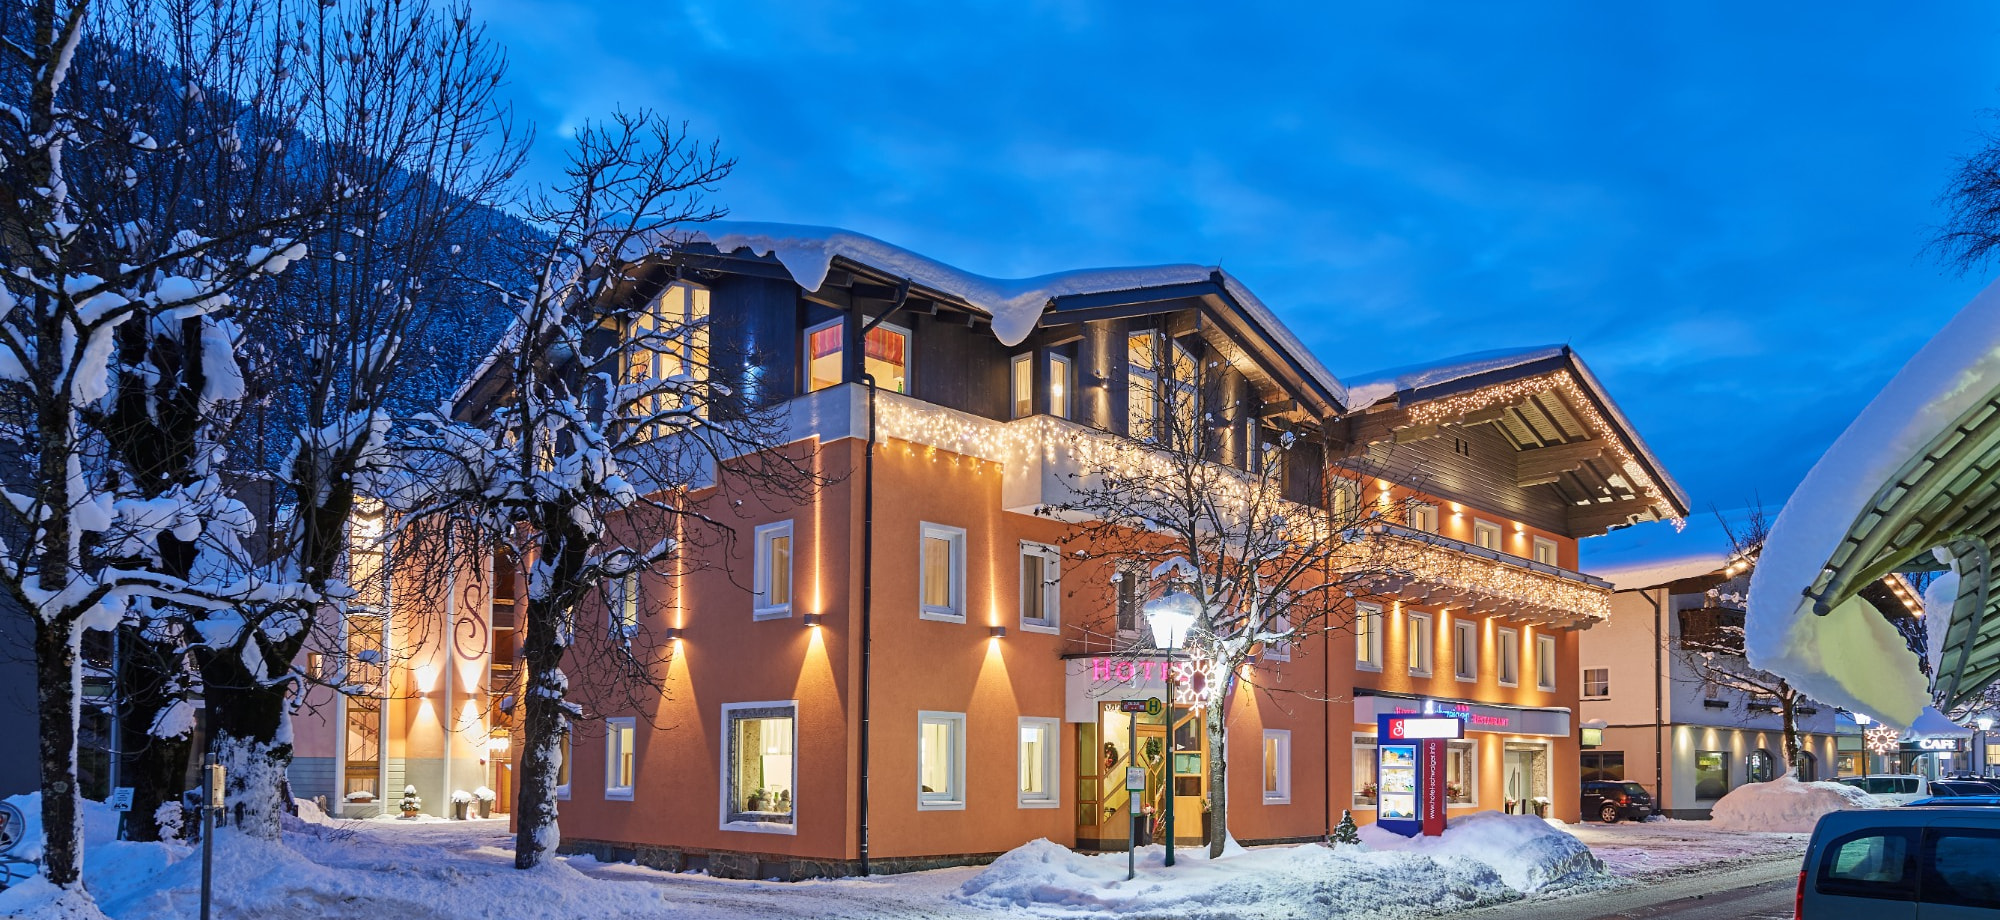 Winterurlaub im Hotel Schwaiger in zentraler Lage mitten in Ski amadé